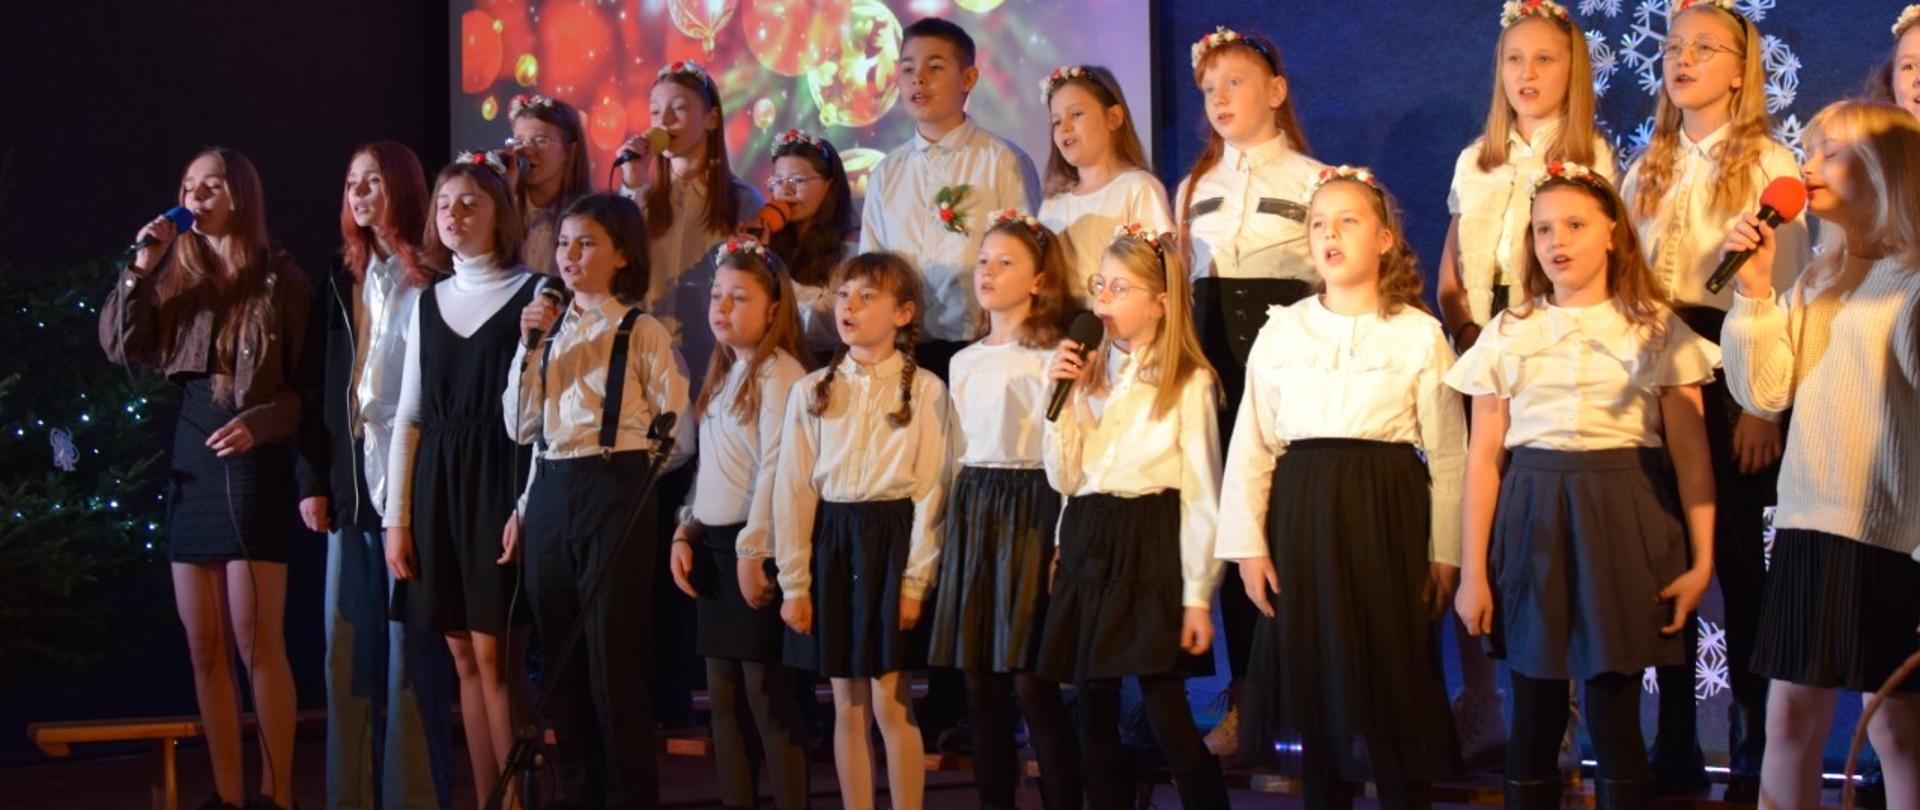 26 młodych artystów ze Studia Piosenki SP 1 na scenie śpiewa znane i lubiane polskie kolędy. 